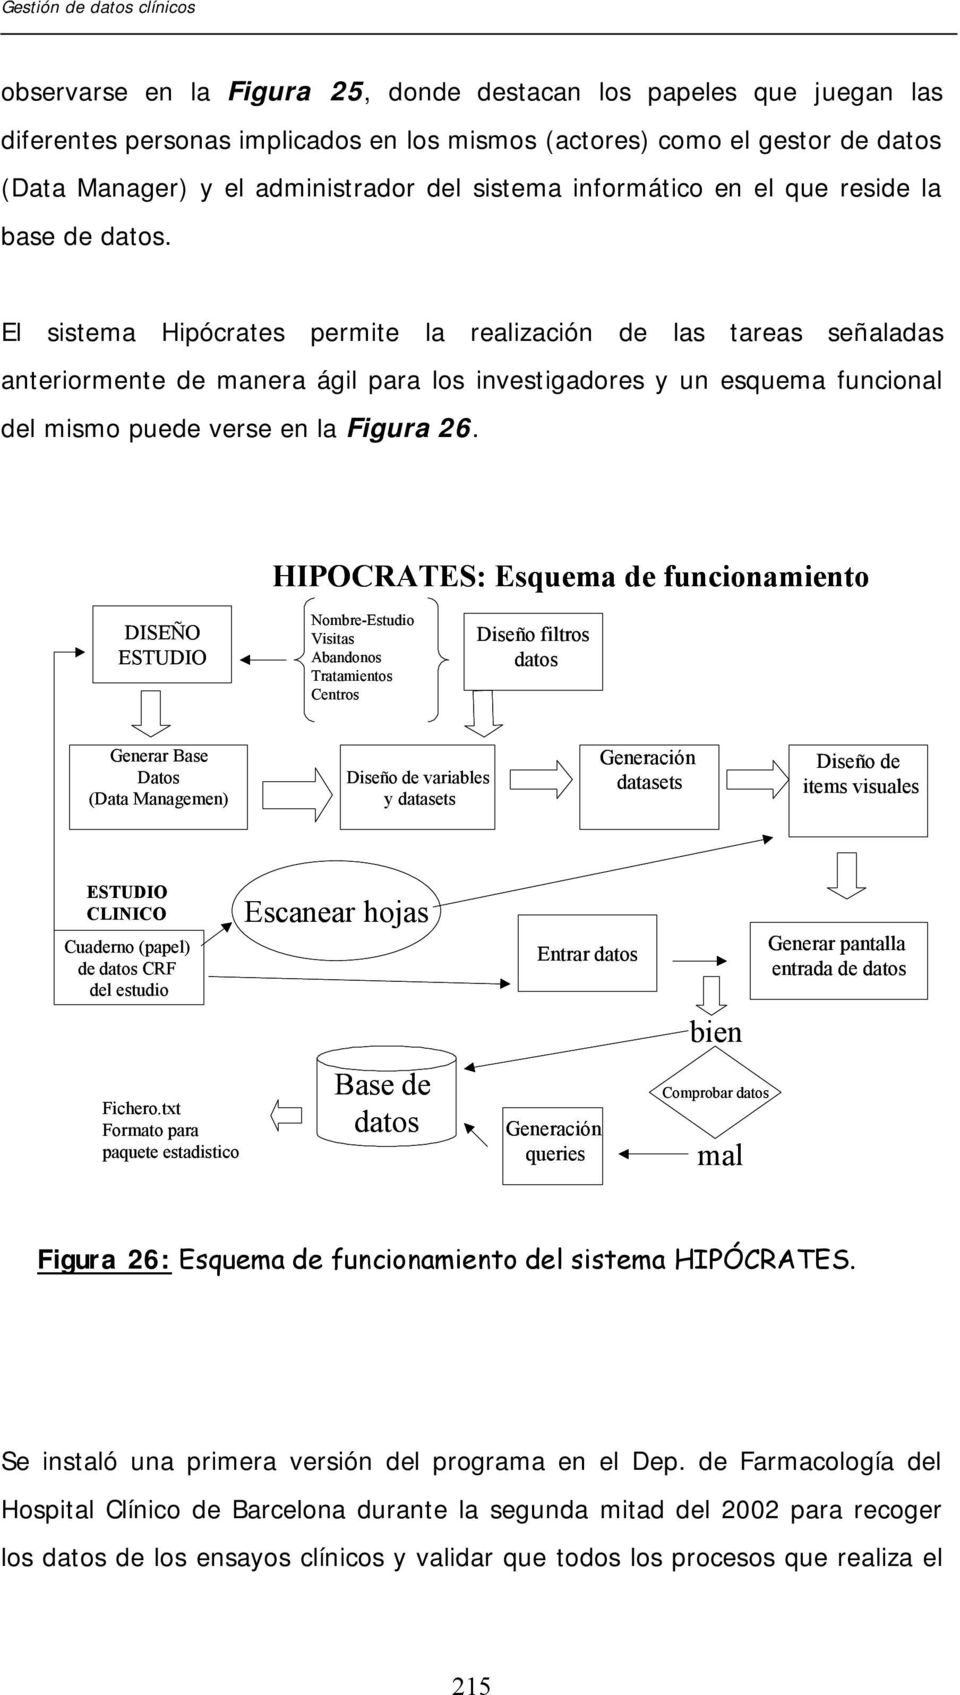 El sistema Hipócrates permite la realización de las tareas señaladas anteriormente de manera ágil para los investigadores y un esquema funcional del mismo puede verse en la Figura 26.